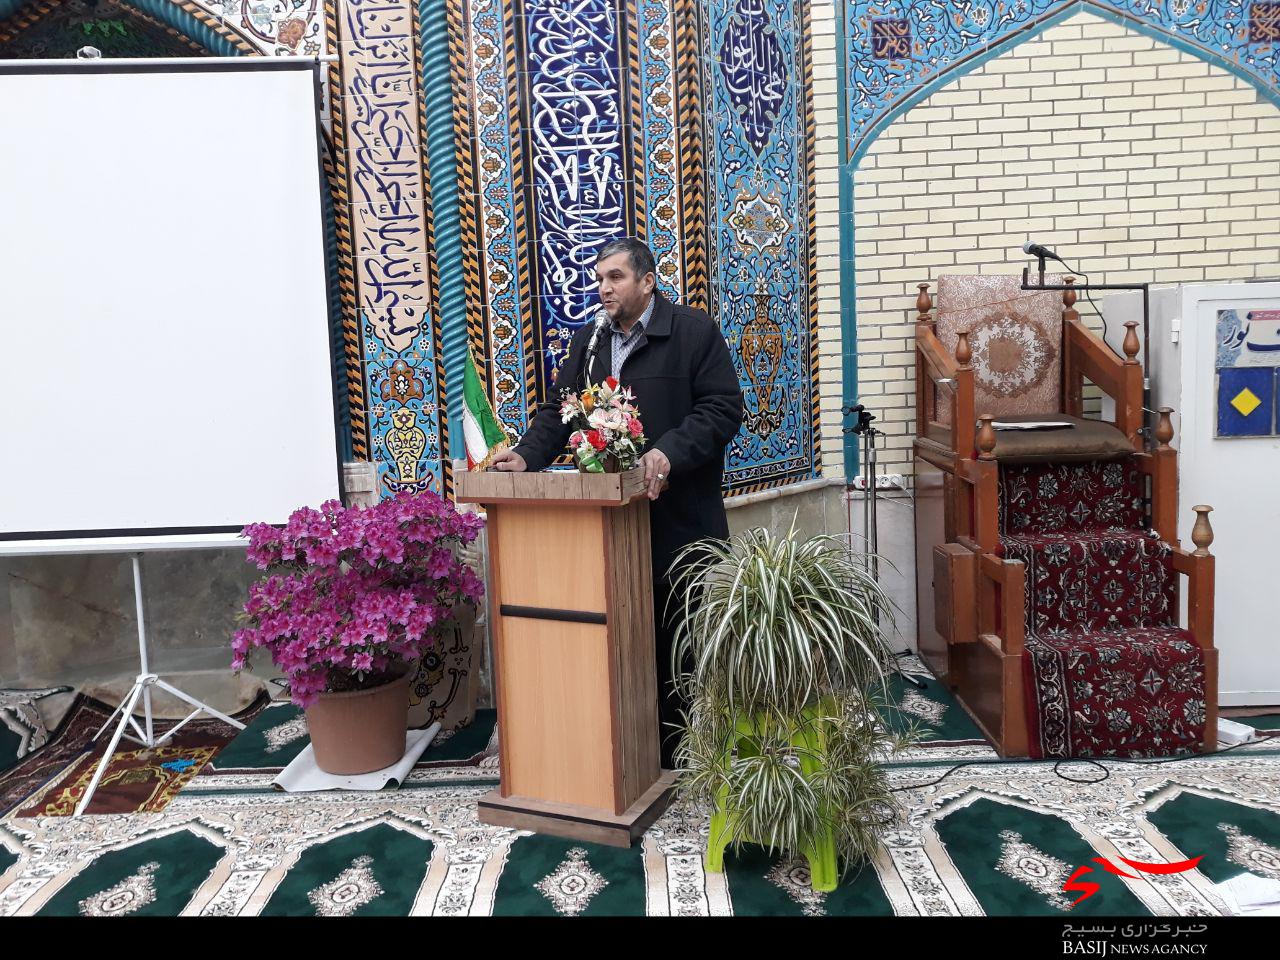 مسجد پیامبر اعظم(ص) شهرک امام خمینی فومن افتتاح شد+تصاویر